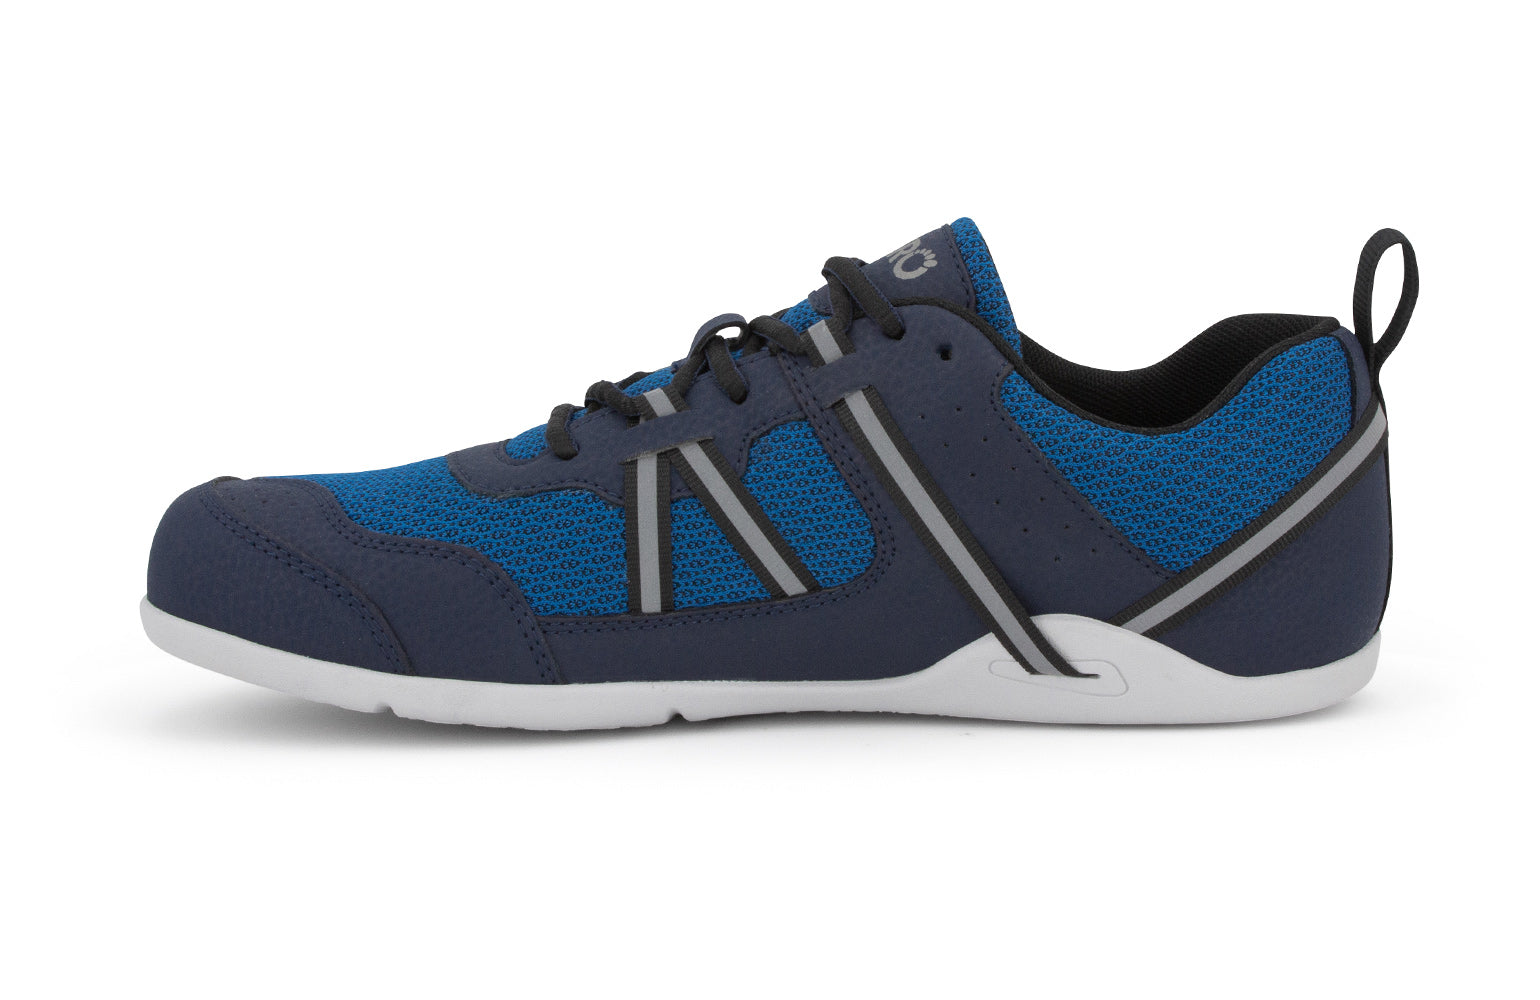 Xero Shoes Prio barfods løbesko/træningssko til mænd i farven mykonos blue, inderside